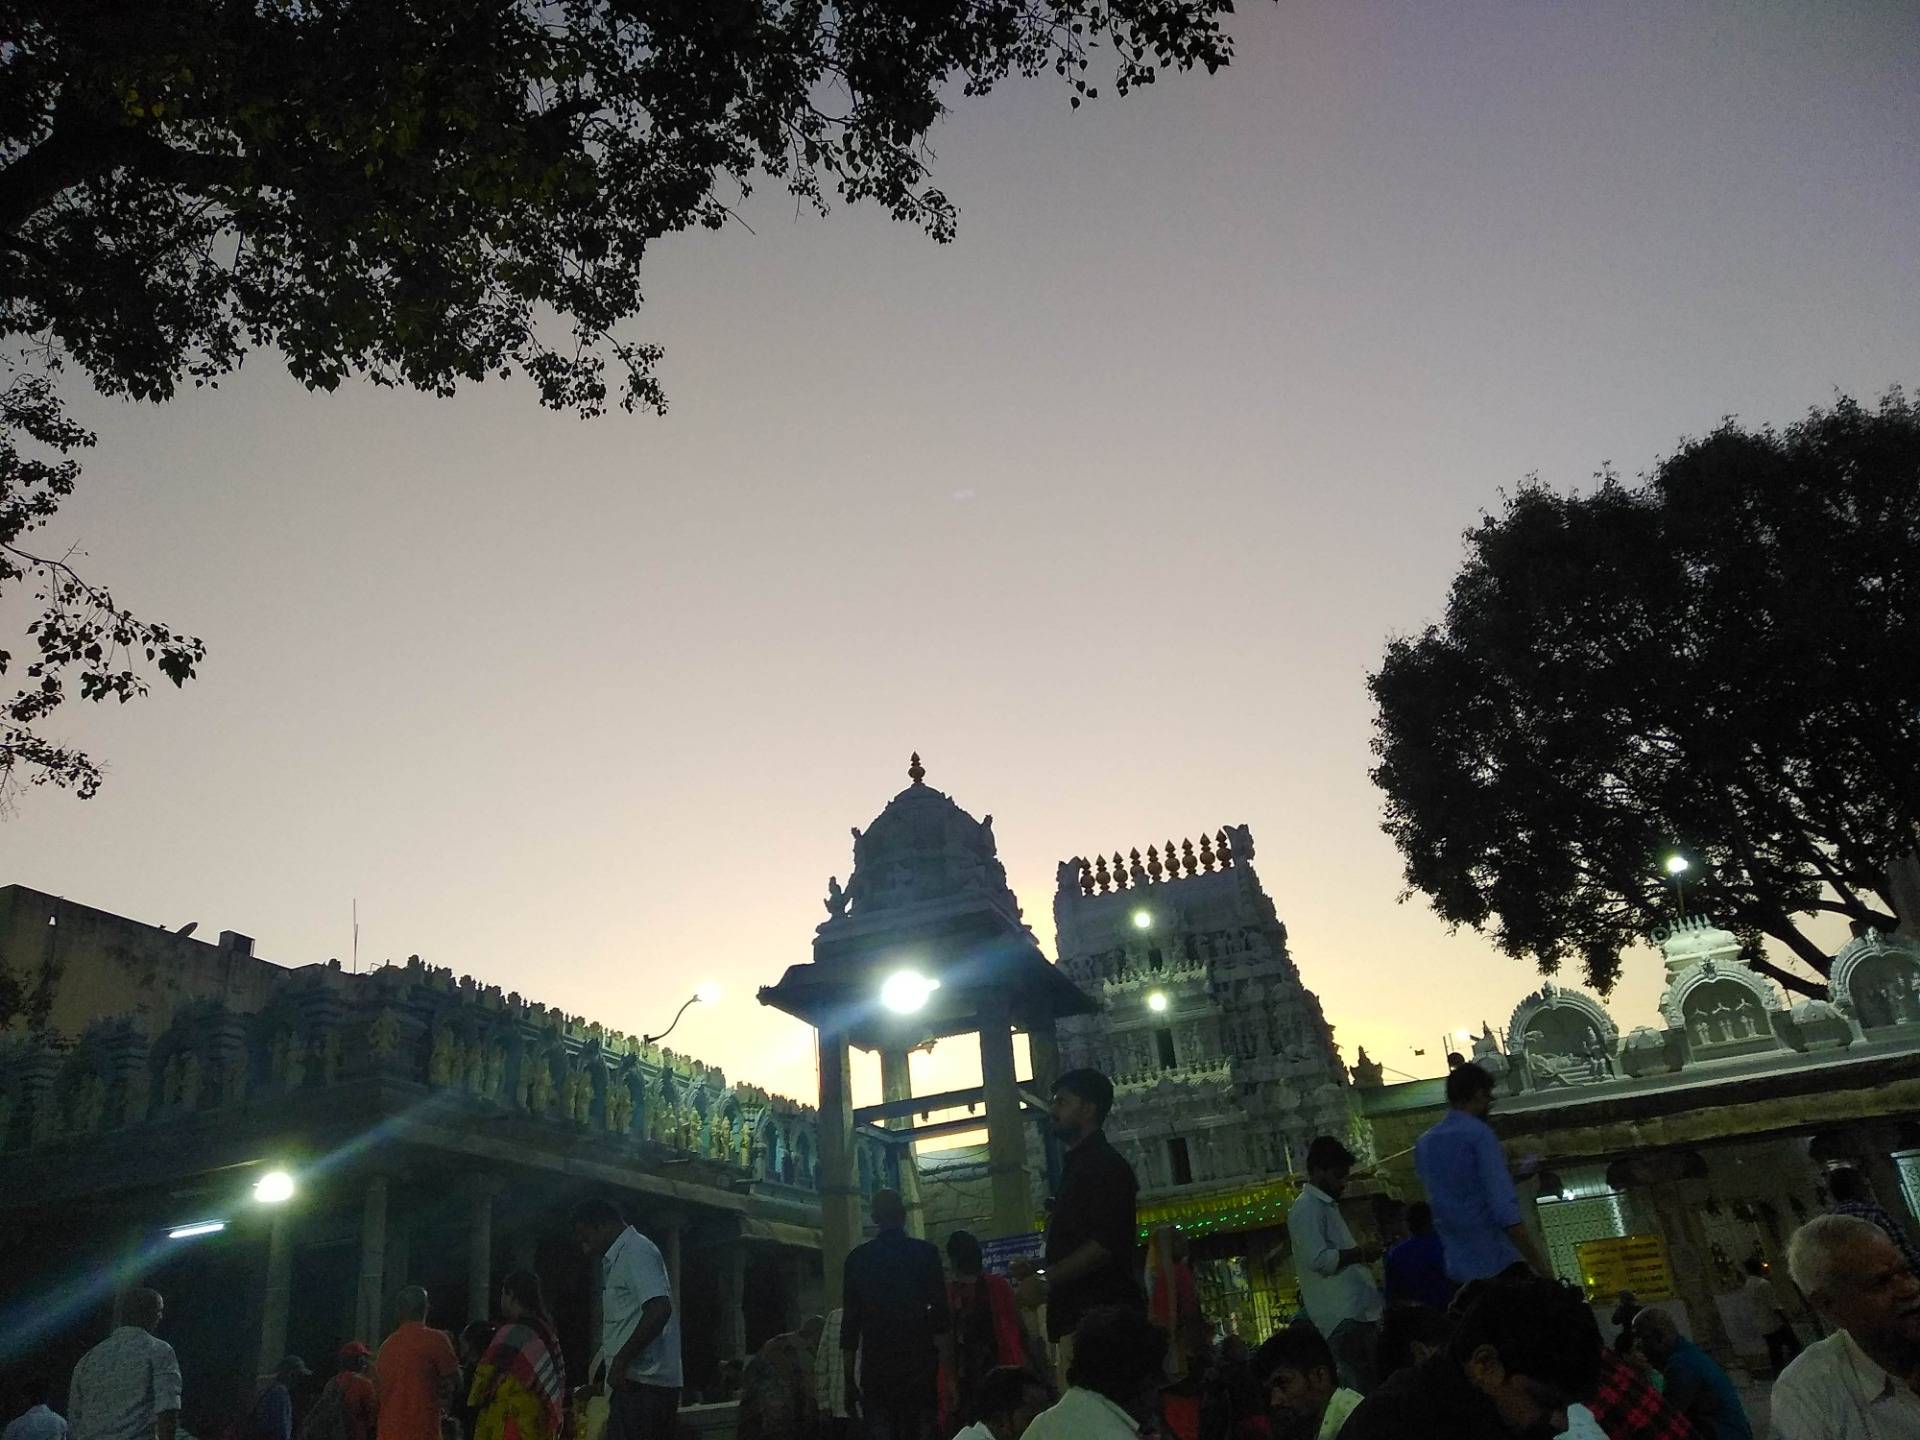 An evening at magnificent Govinda rajula temple, abundance of spiritual and mental peace.